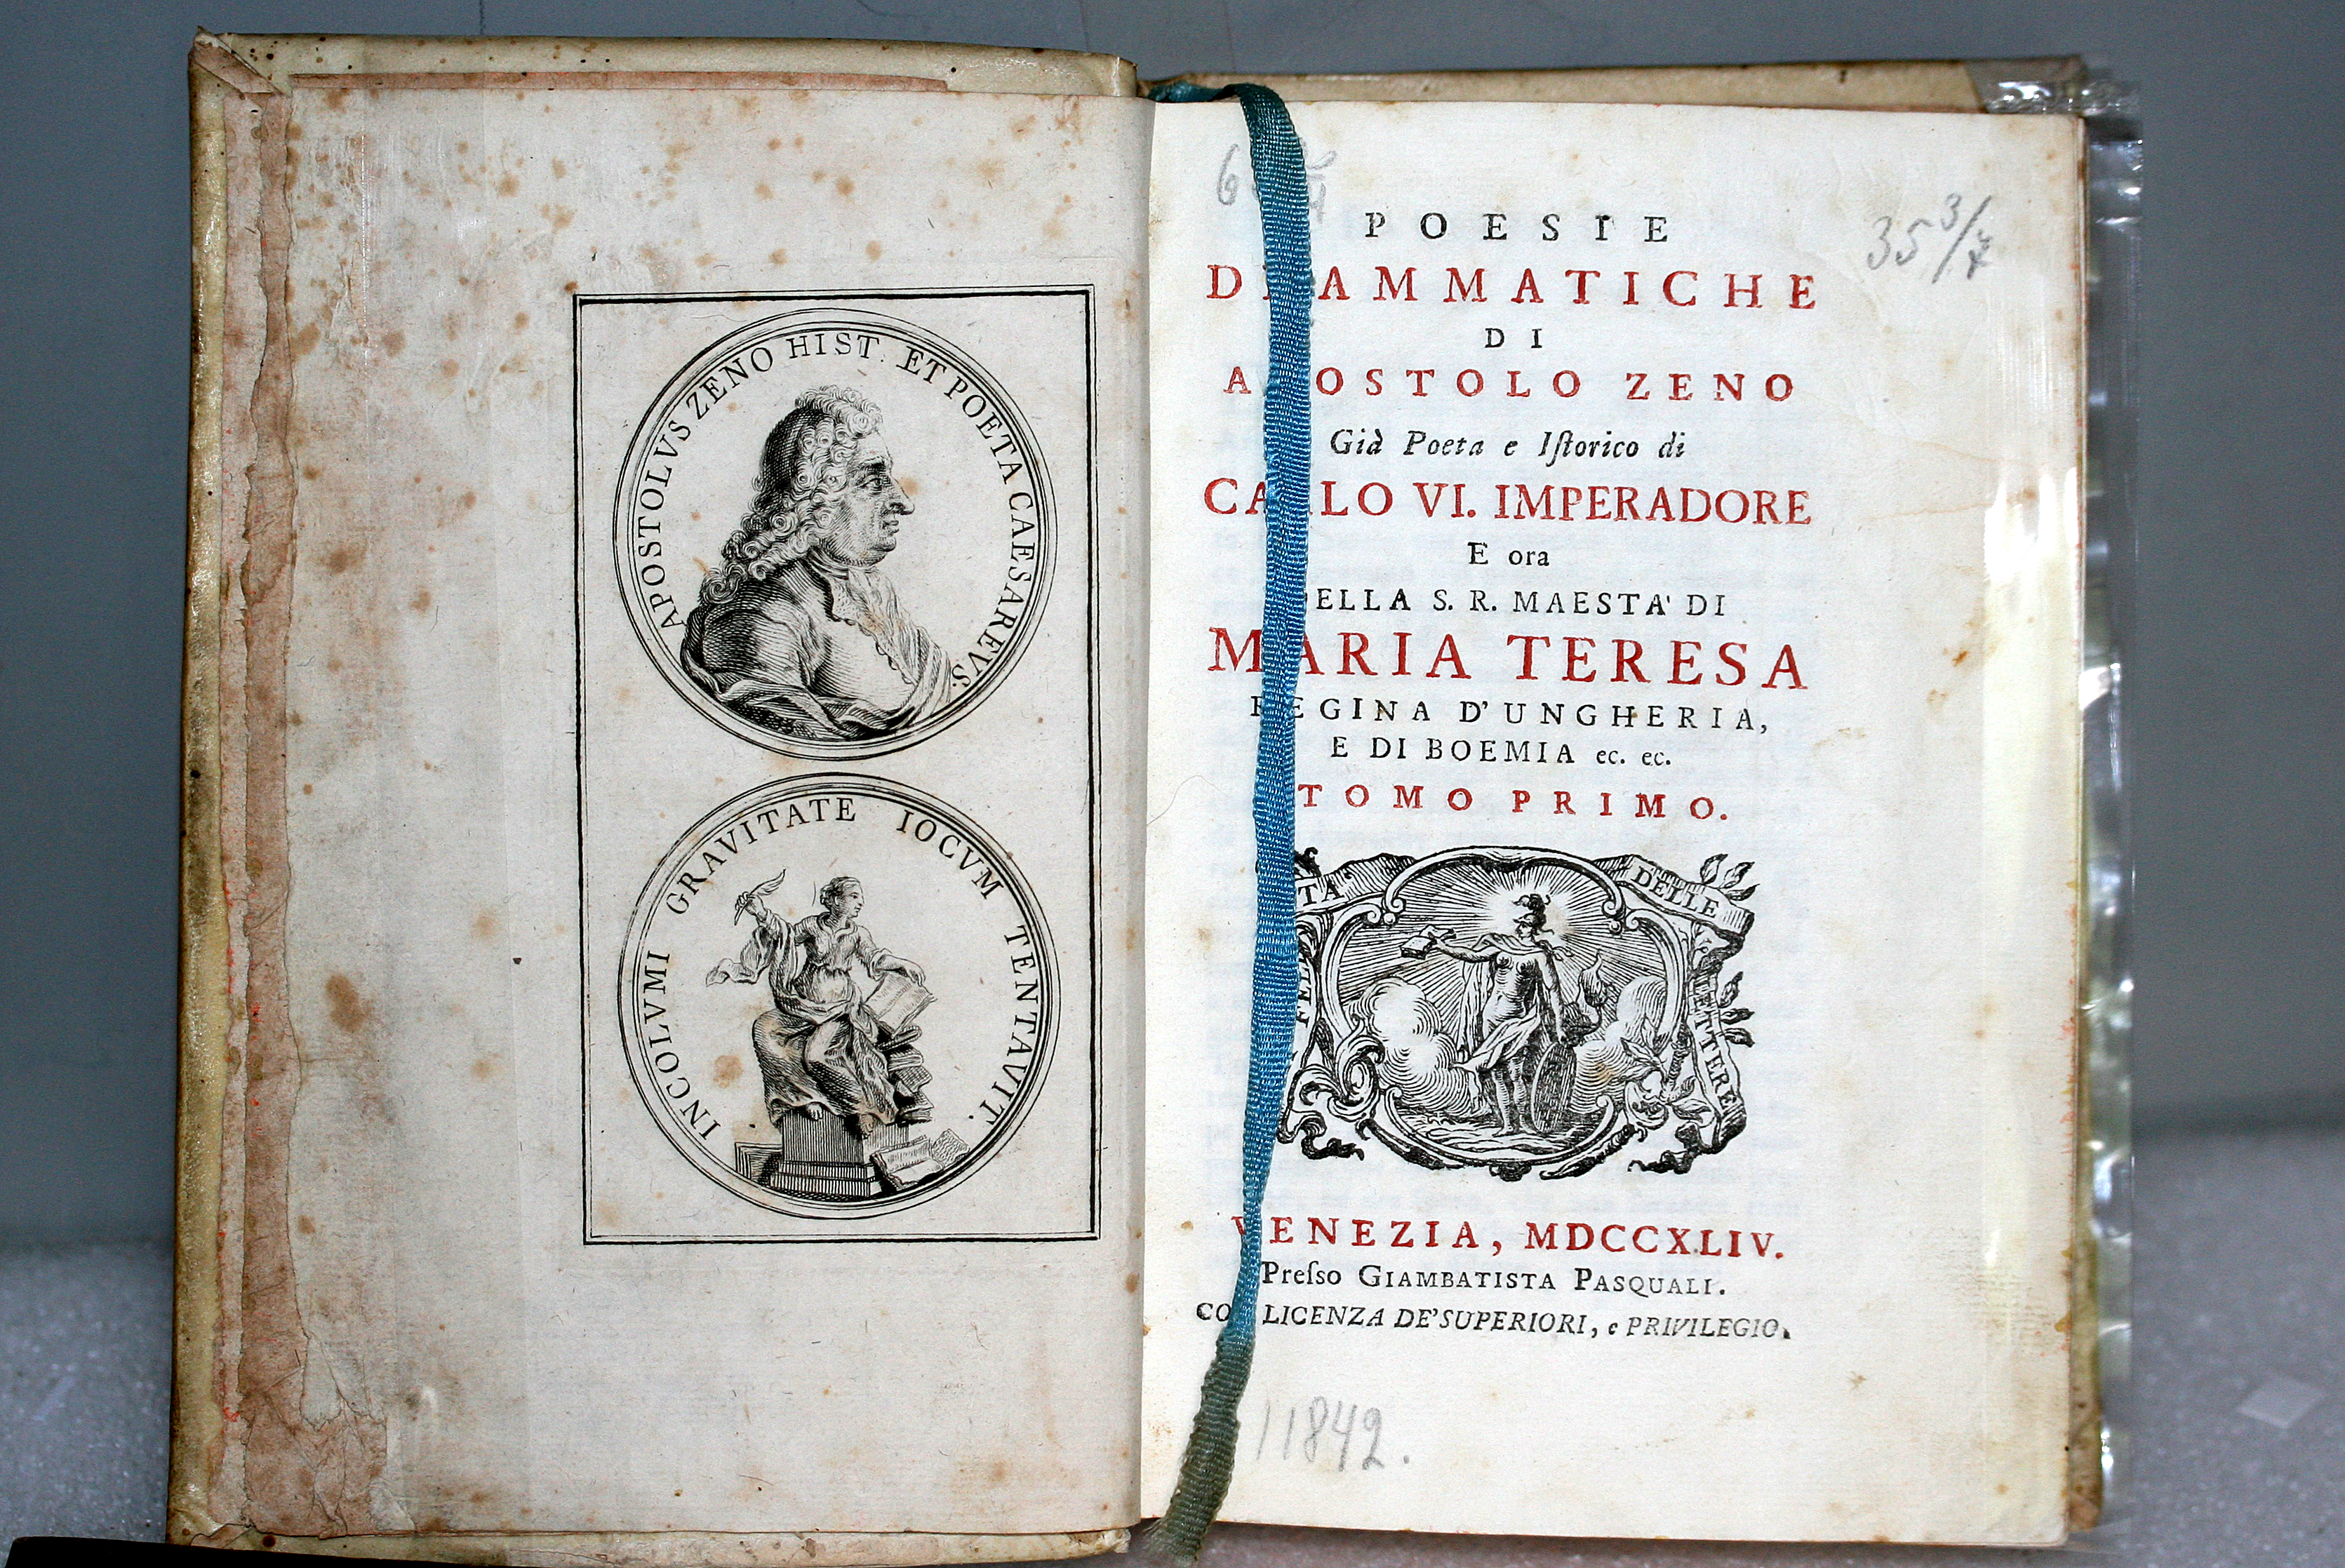 Дзено, Апостоло (1668–1750). Драматическая поэзия.Т. 1 – Венеция, 1744